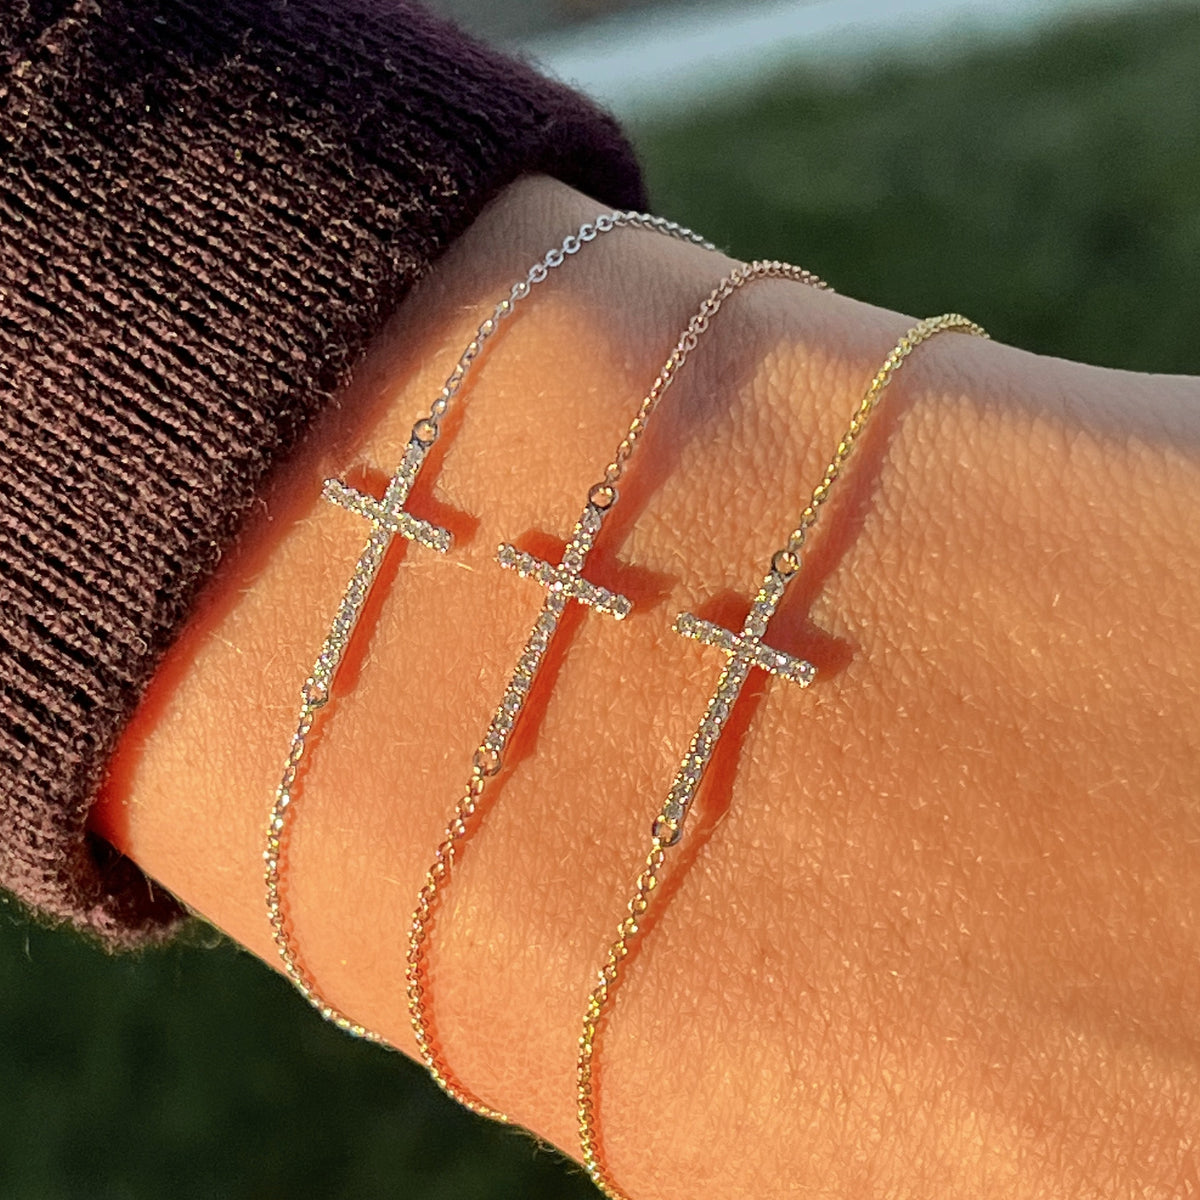 Sideways Diamond Cross Bracelet – Happy Jewelers